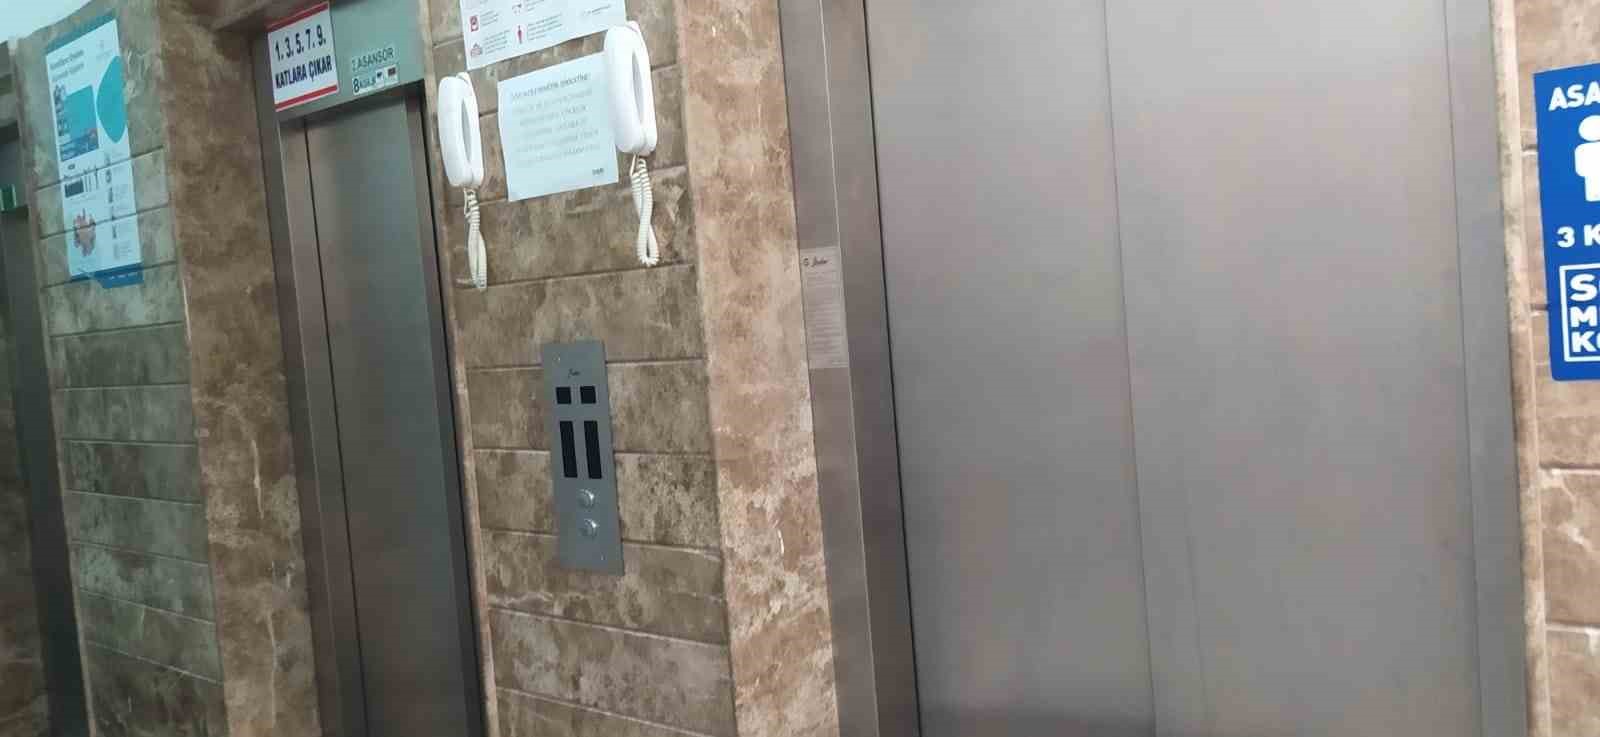 Gaziantep’te yurtta hızlı inen asansördeki öğrencilerin korku dolu anları kamerada
